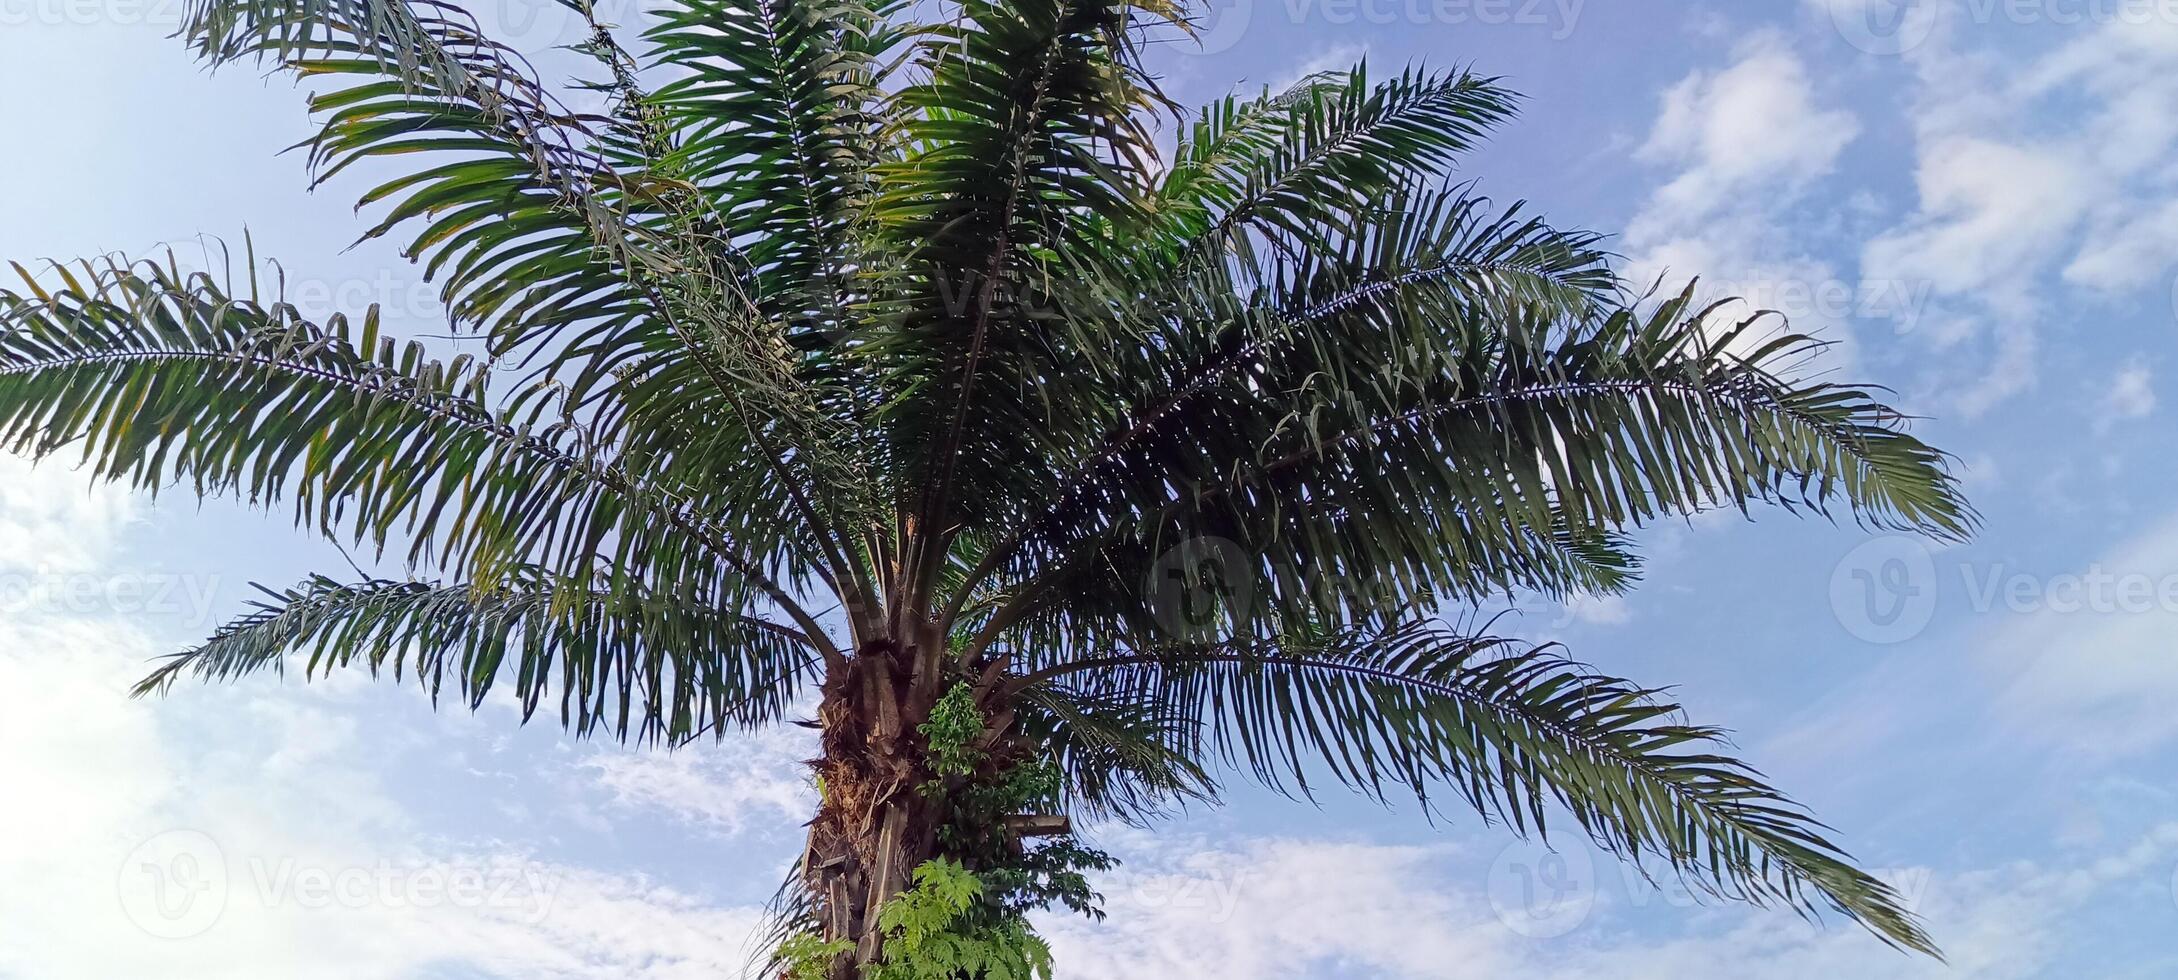 pétrole paume les plantes lequel sont utilisé comme ombre des arbres dans Urbain zones sont décoré avec bleu ciels photo